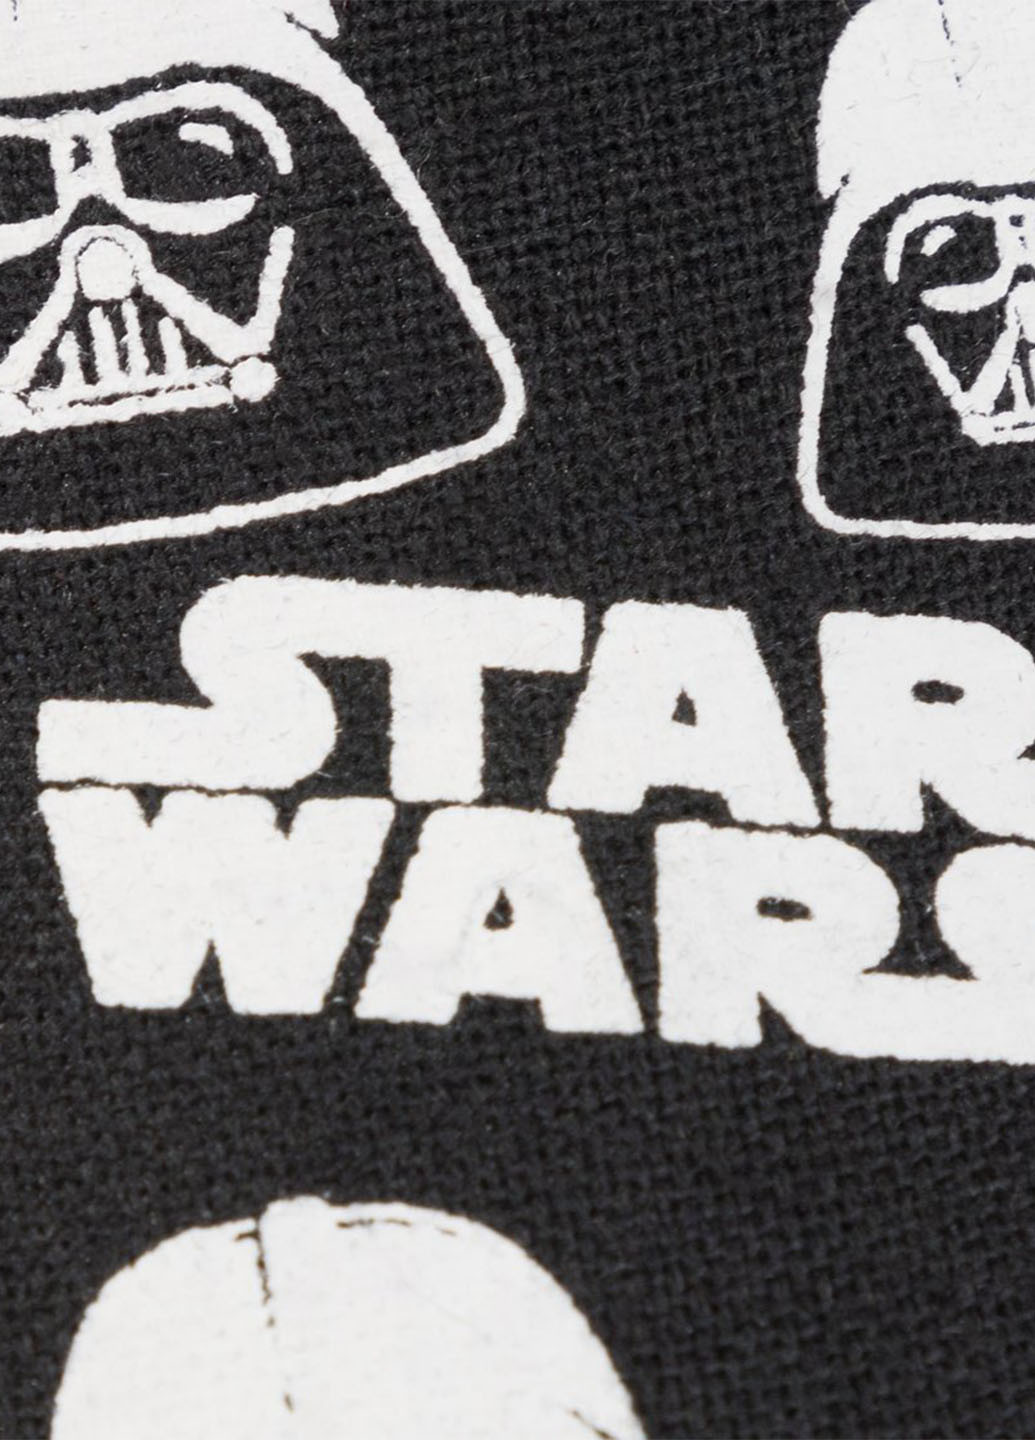 Черно-белые півкед star wars Star Wars с рисунком